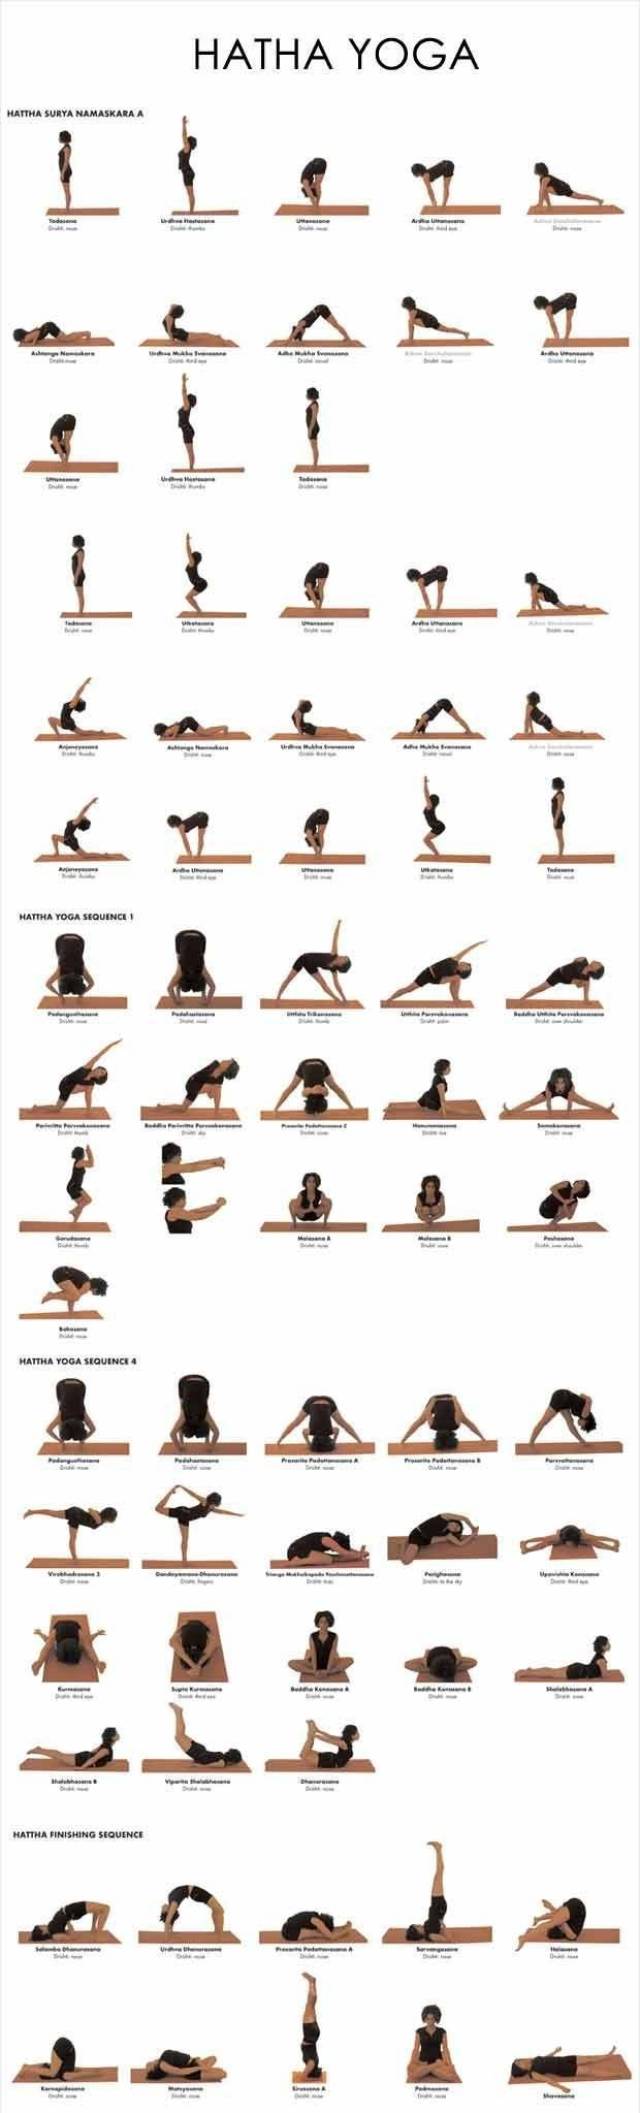 练习瑜伽这么久,你知道的瑜伽流派有哪些